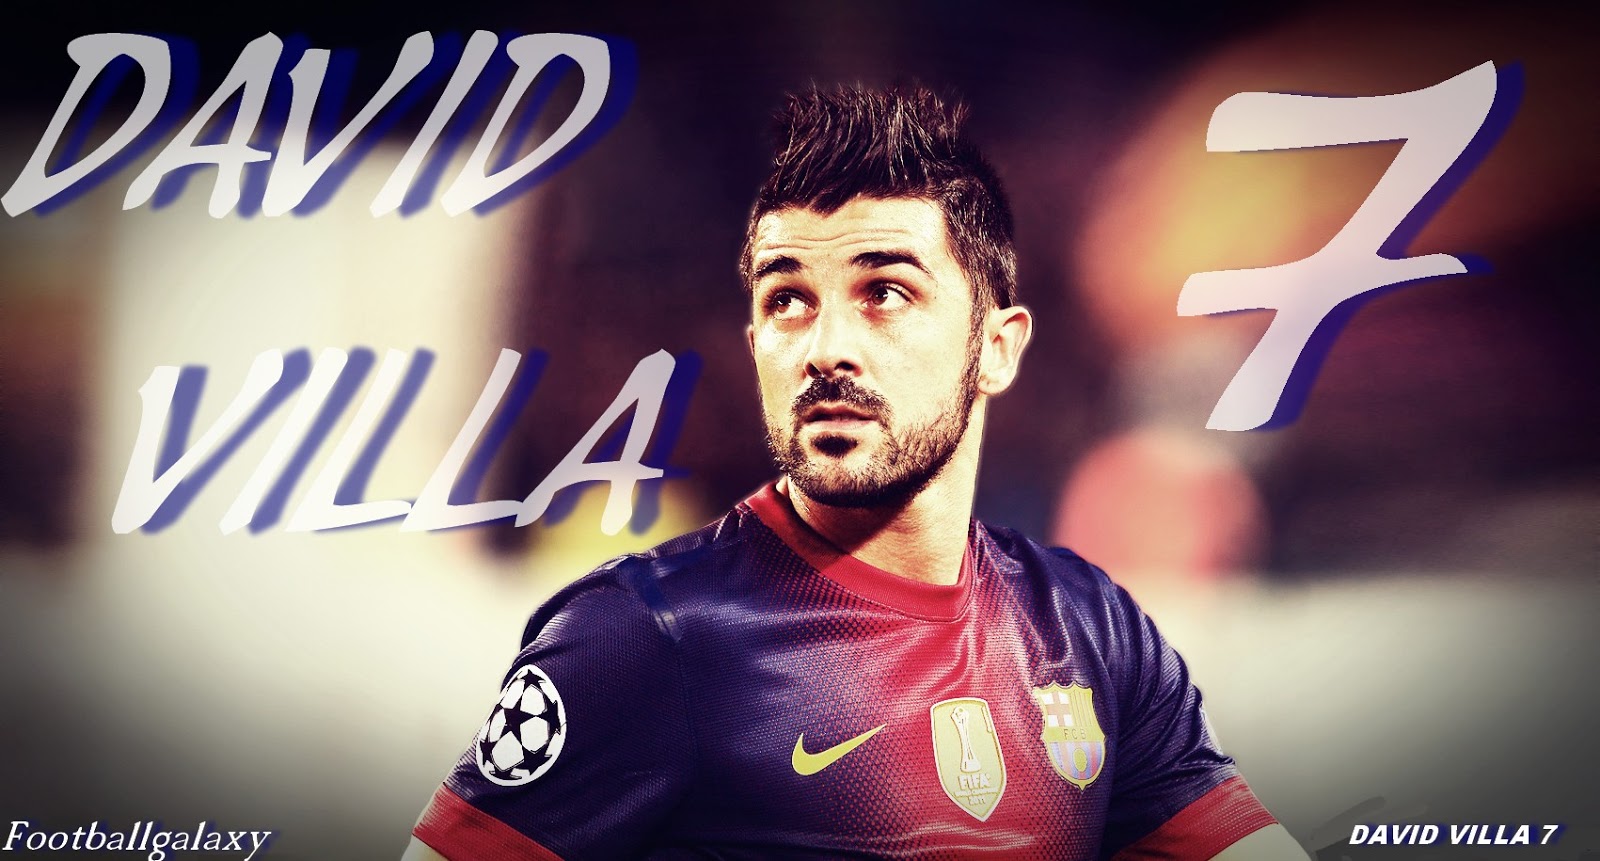 David Villa Wallpaper HD By Football Galaxy Image